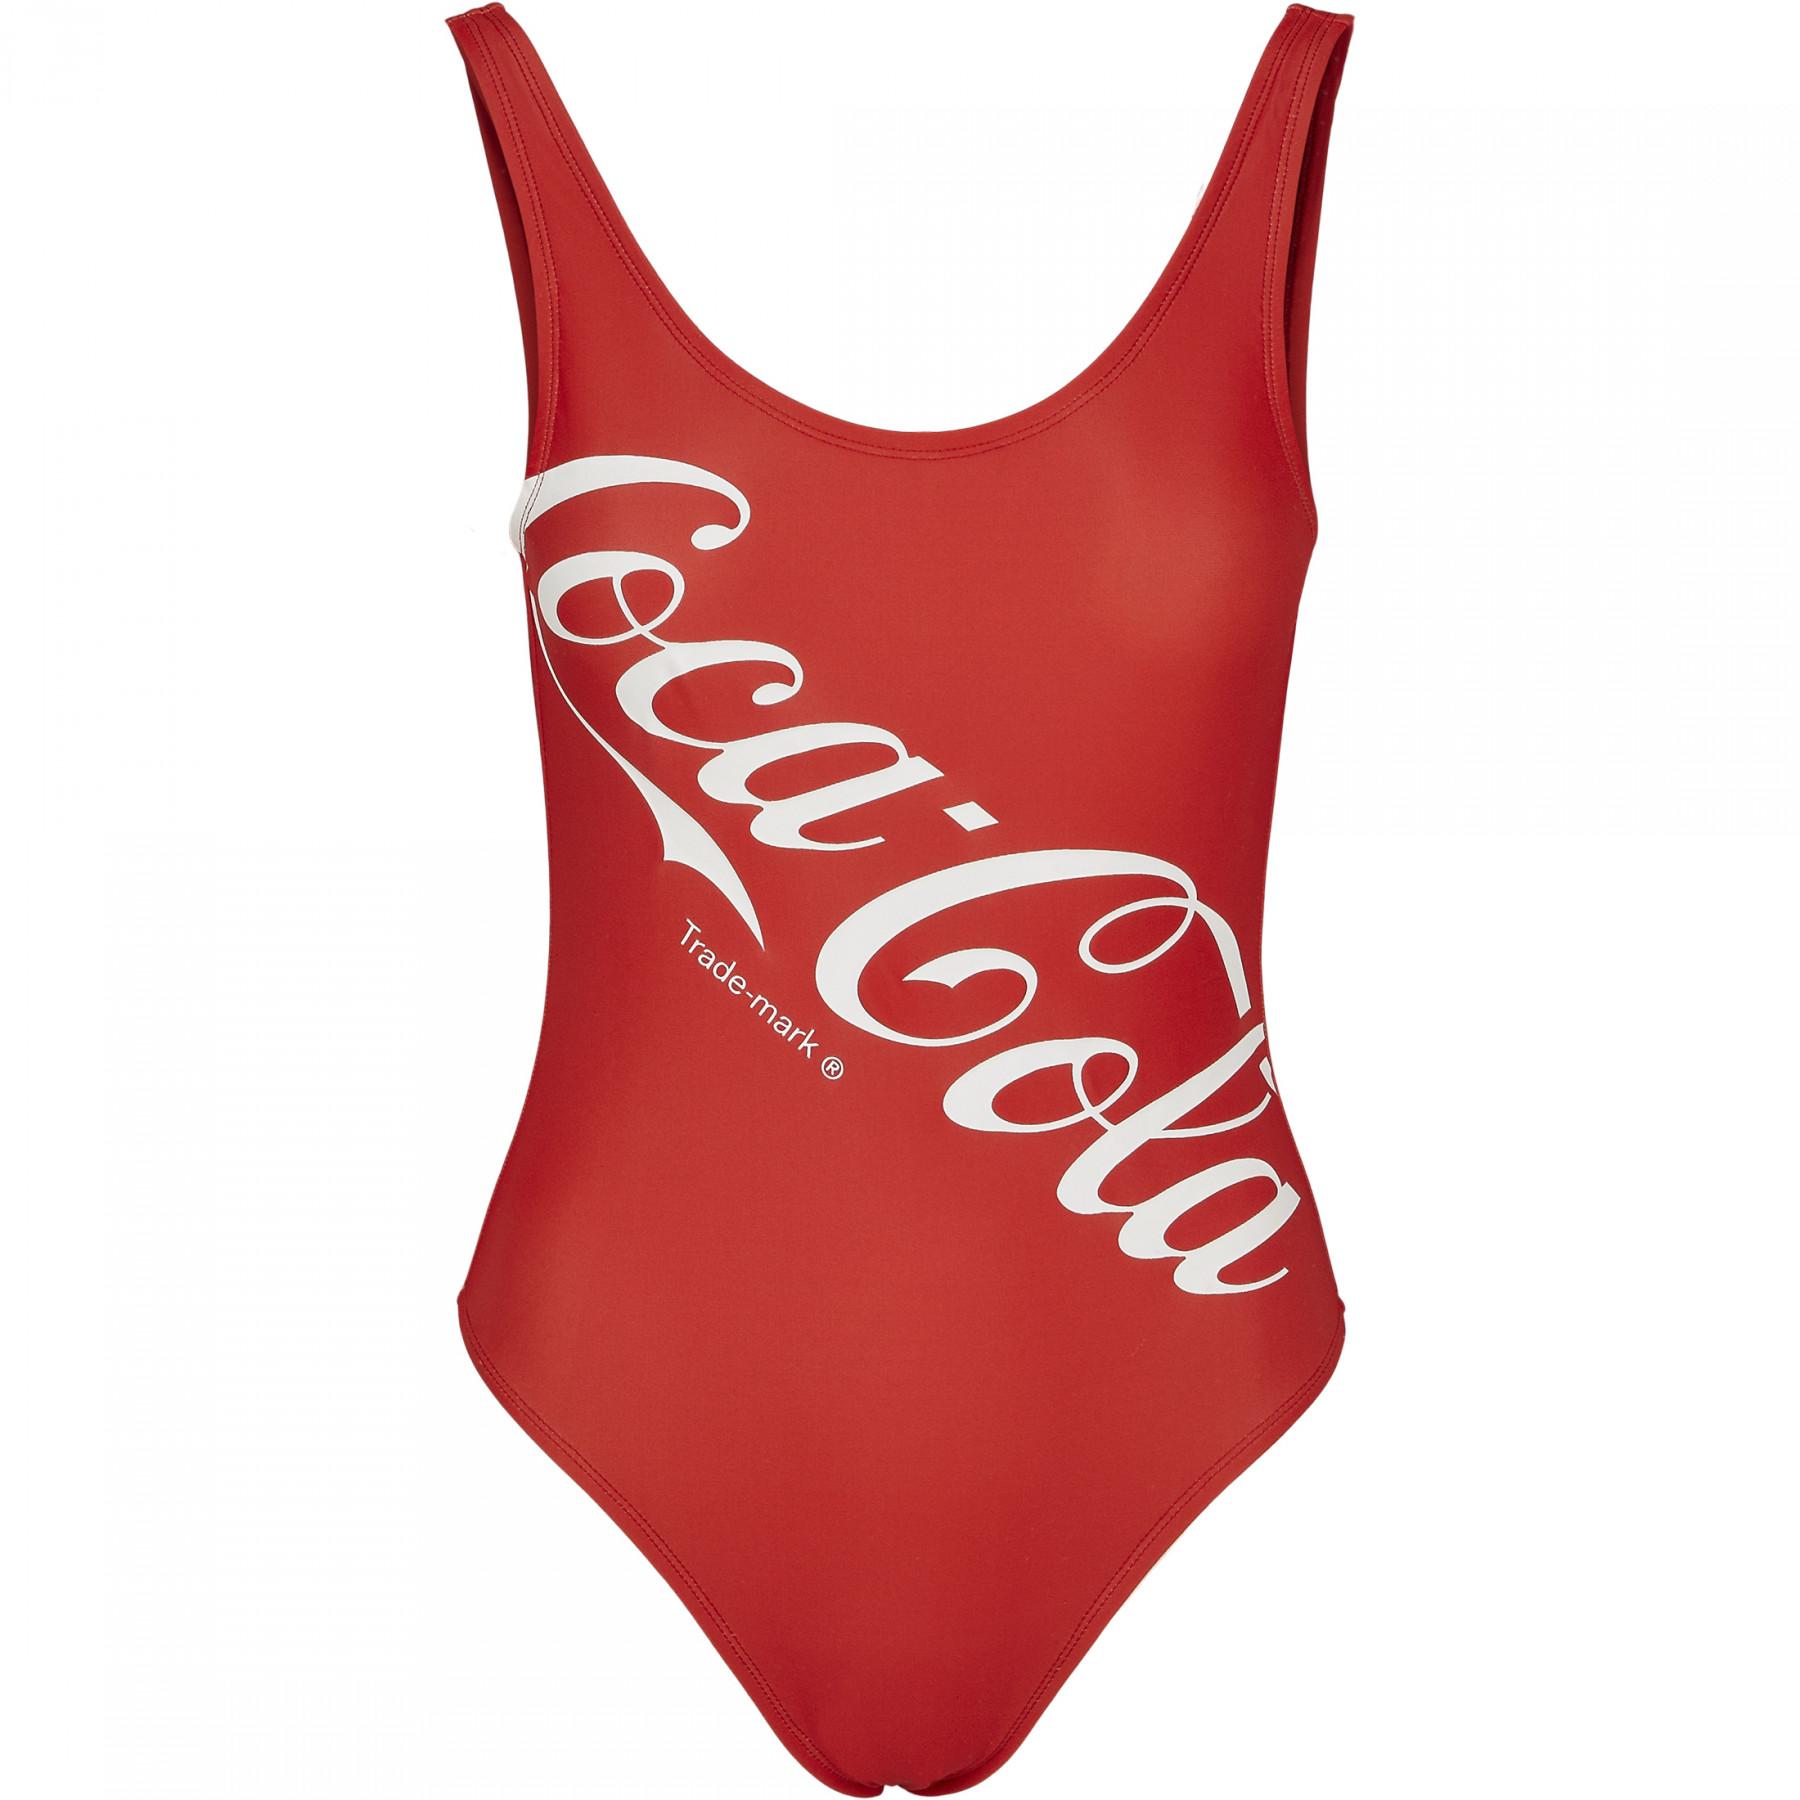 Maillot de bain femme Urban Classic coca cola